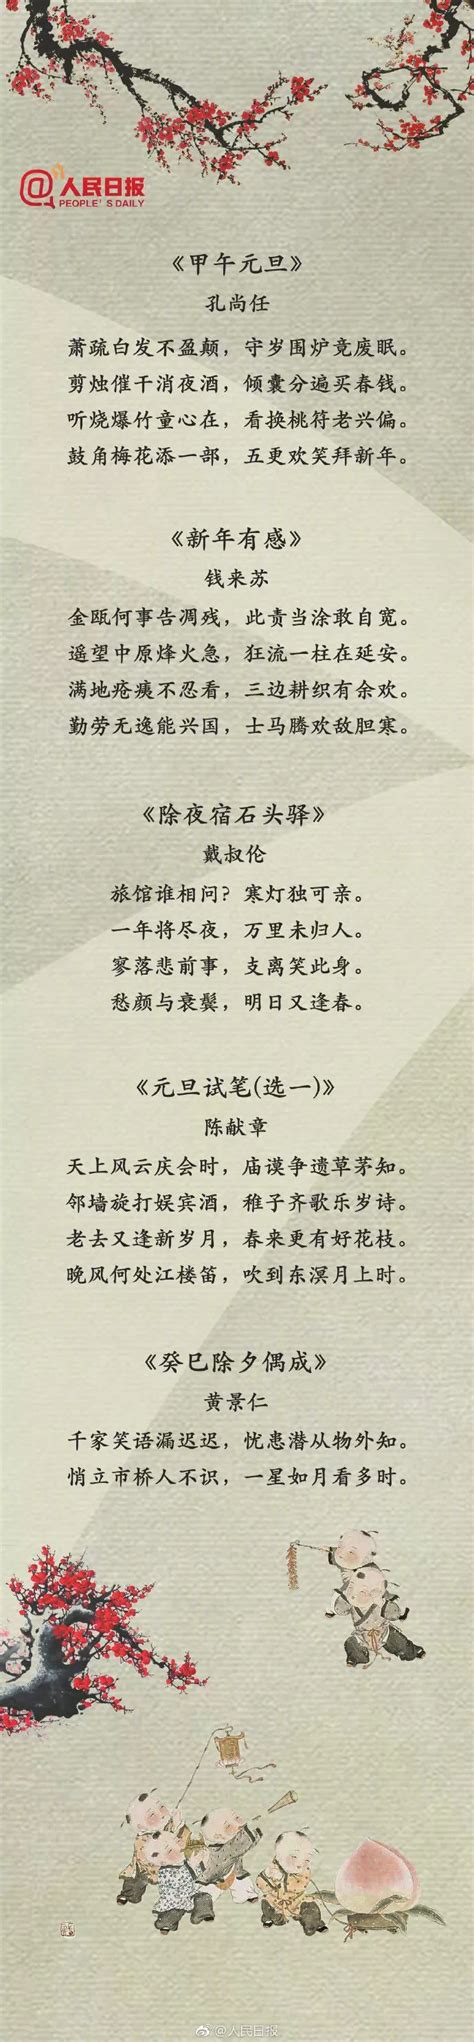 春风化雨 纪念改革开放40周年书画作品展_江苏文艺网